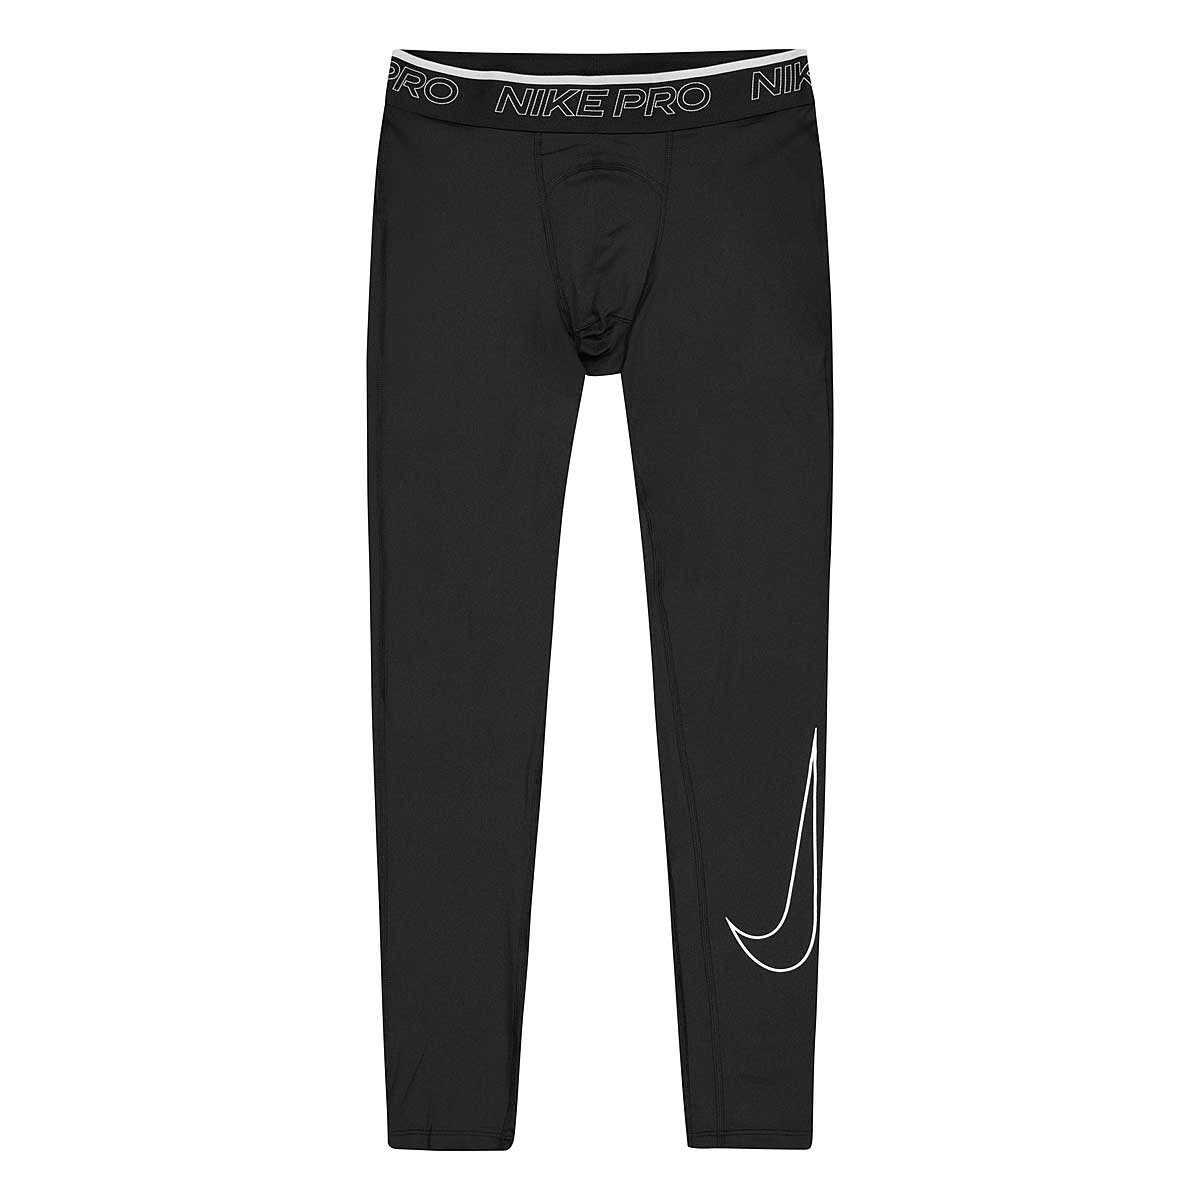 Image of Nike Np Dri-fit Tight, Black/white